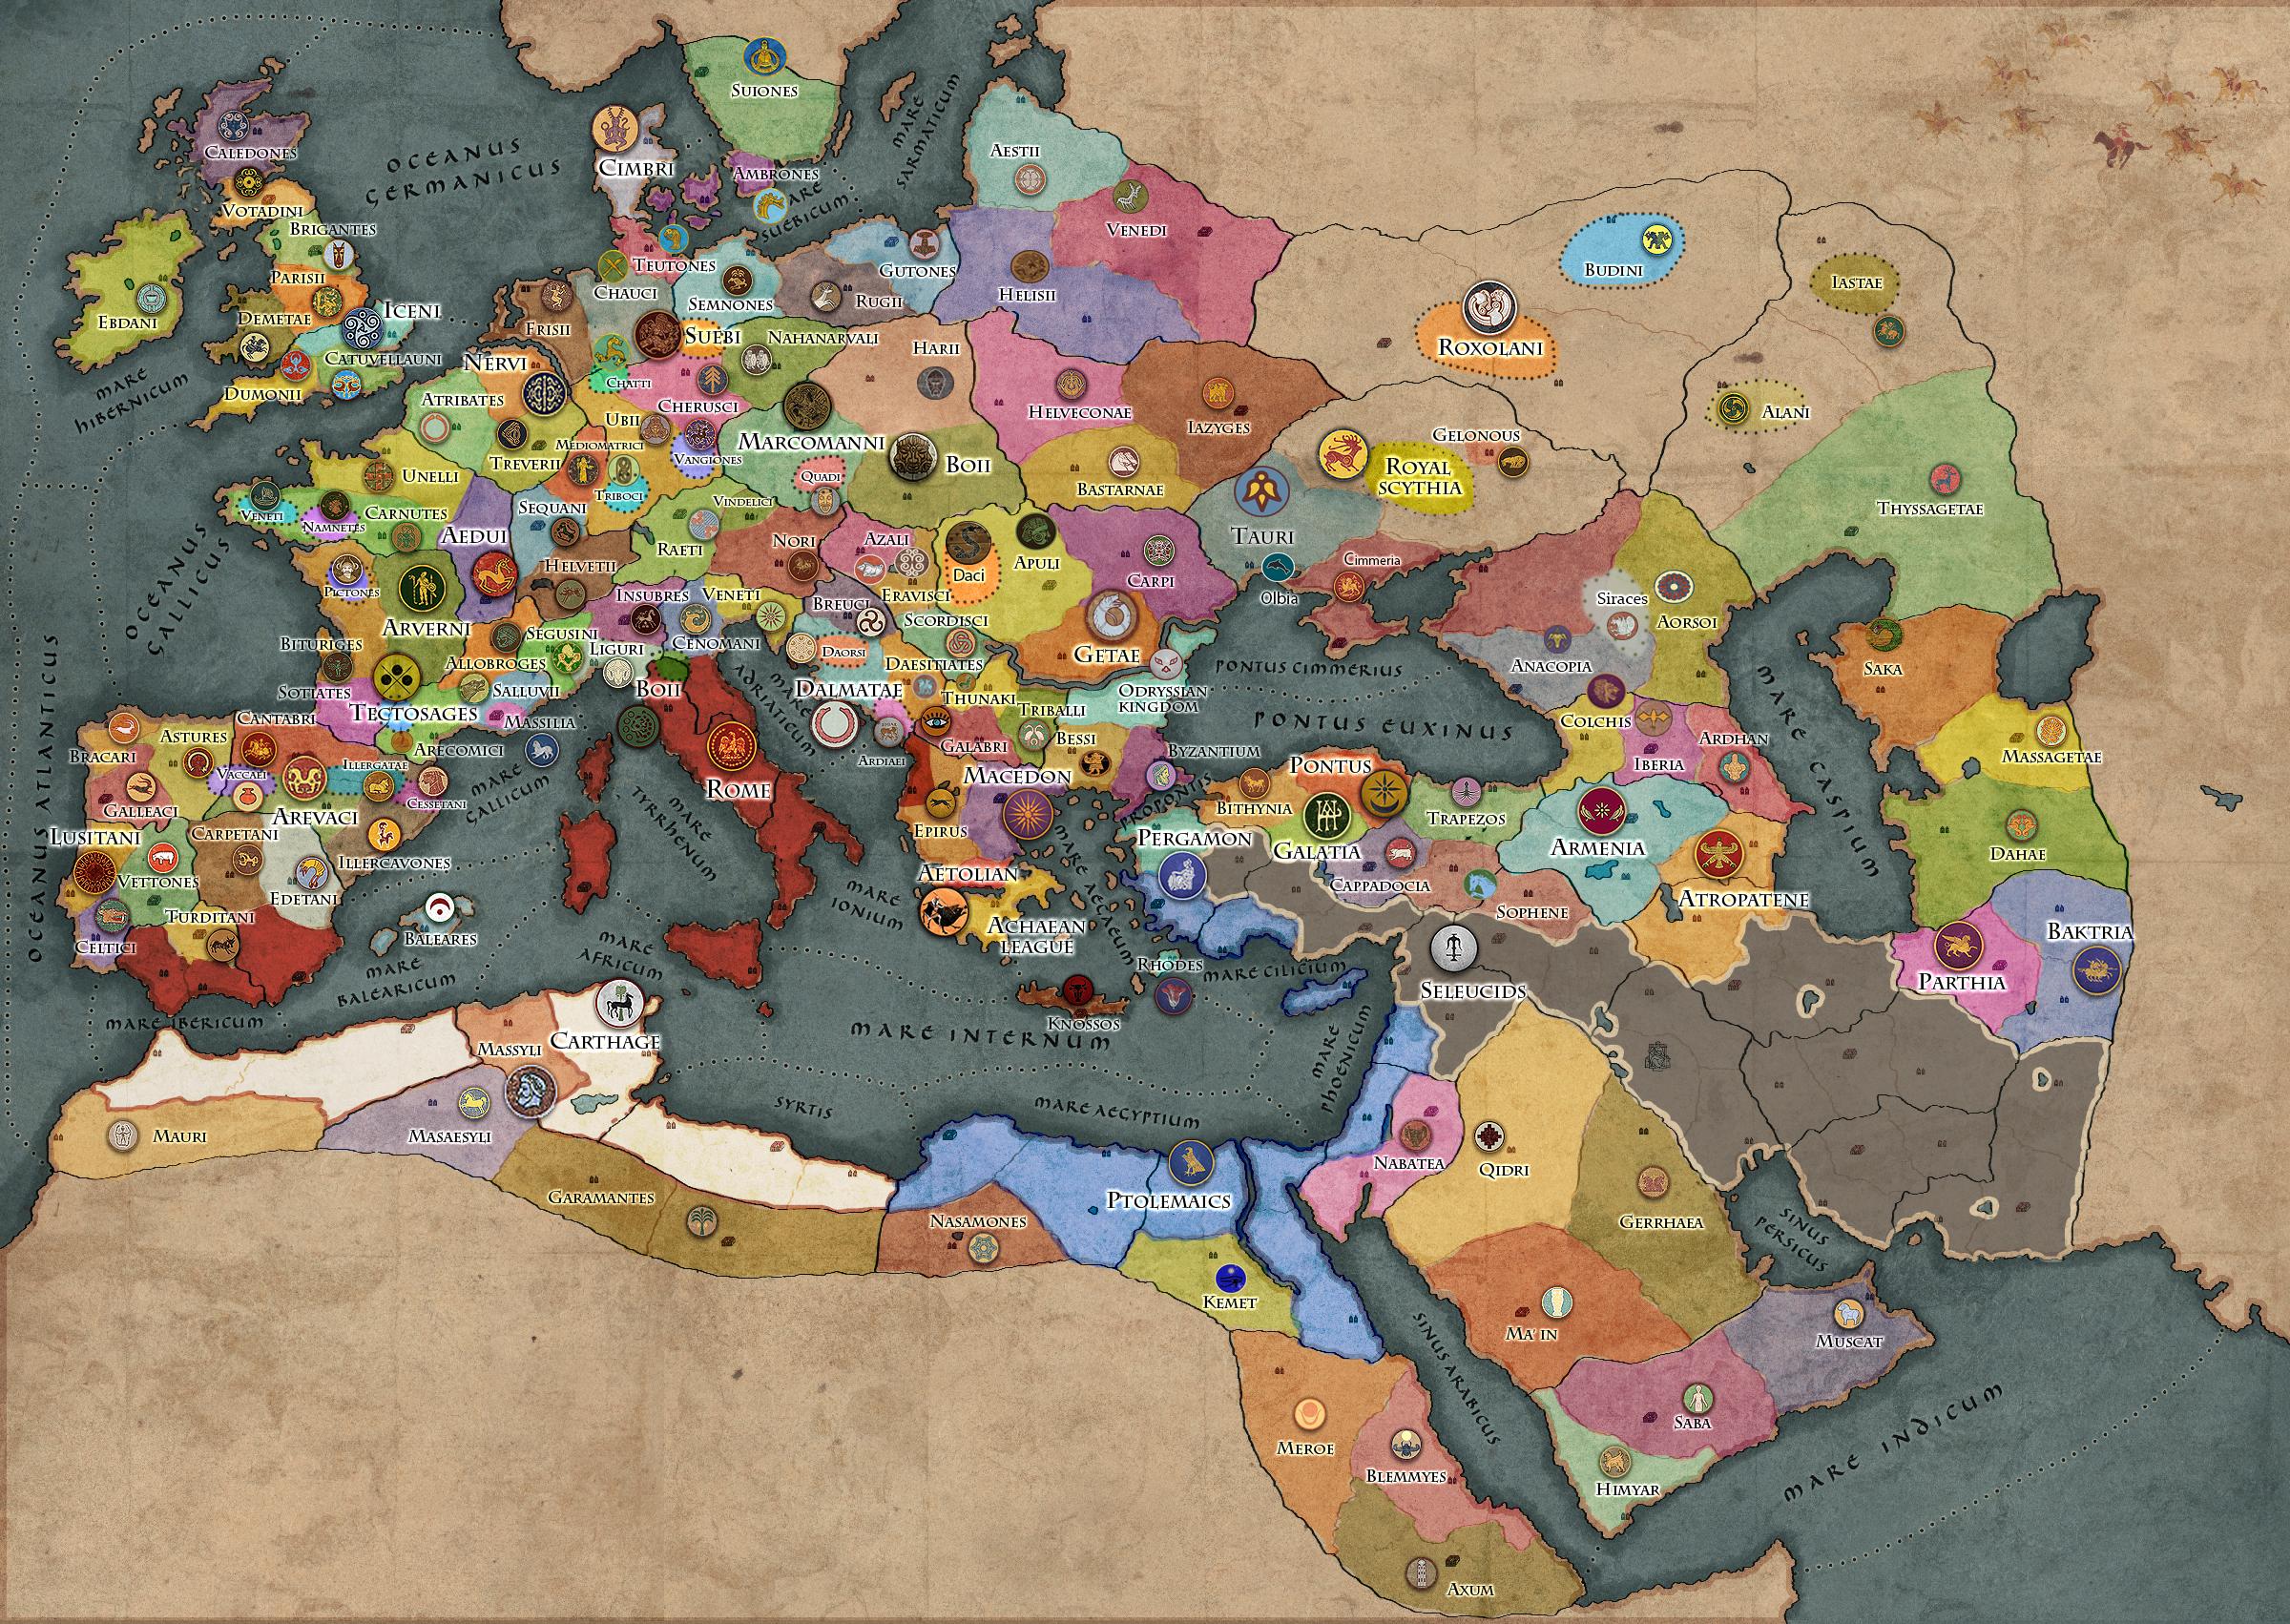 rome 2 total war starting map